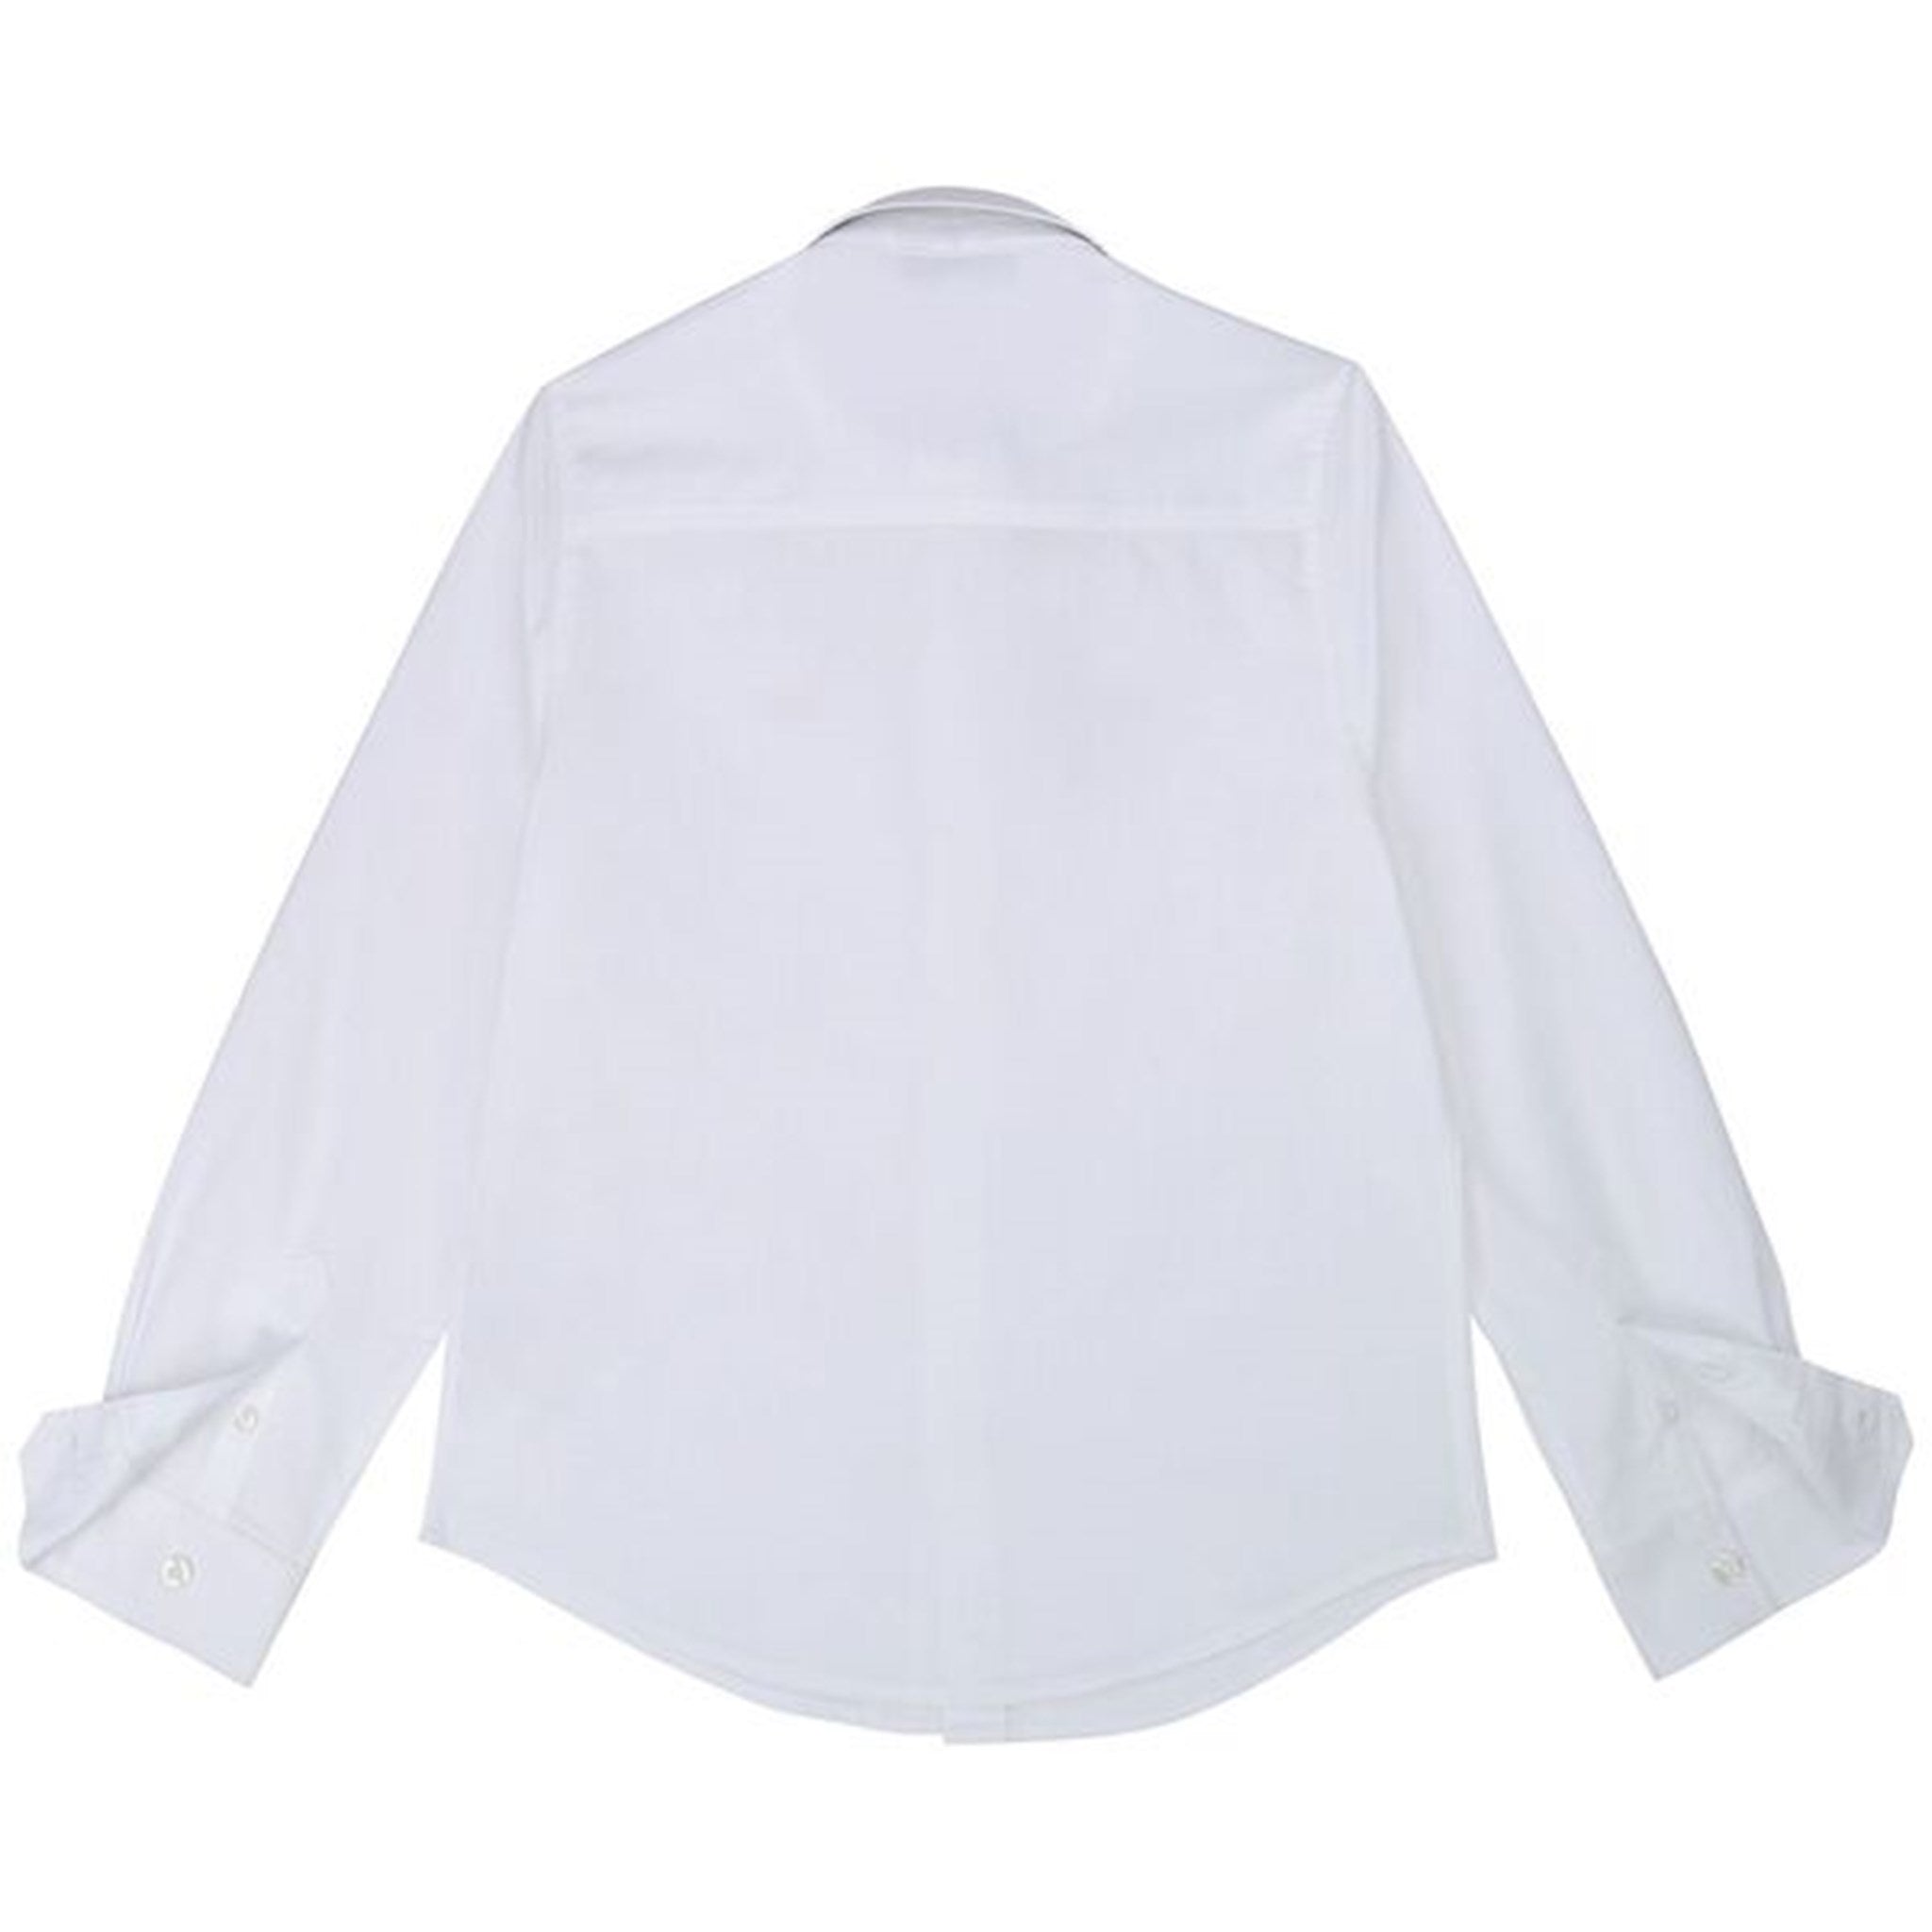 Hugo Boss Boy Long Sleeved Shirt White 2